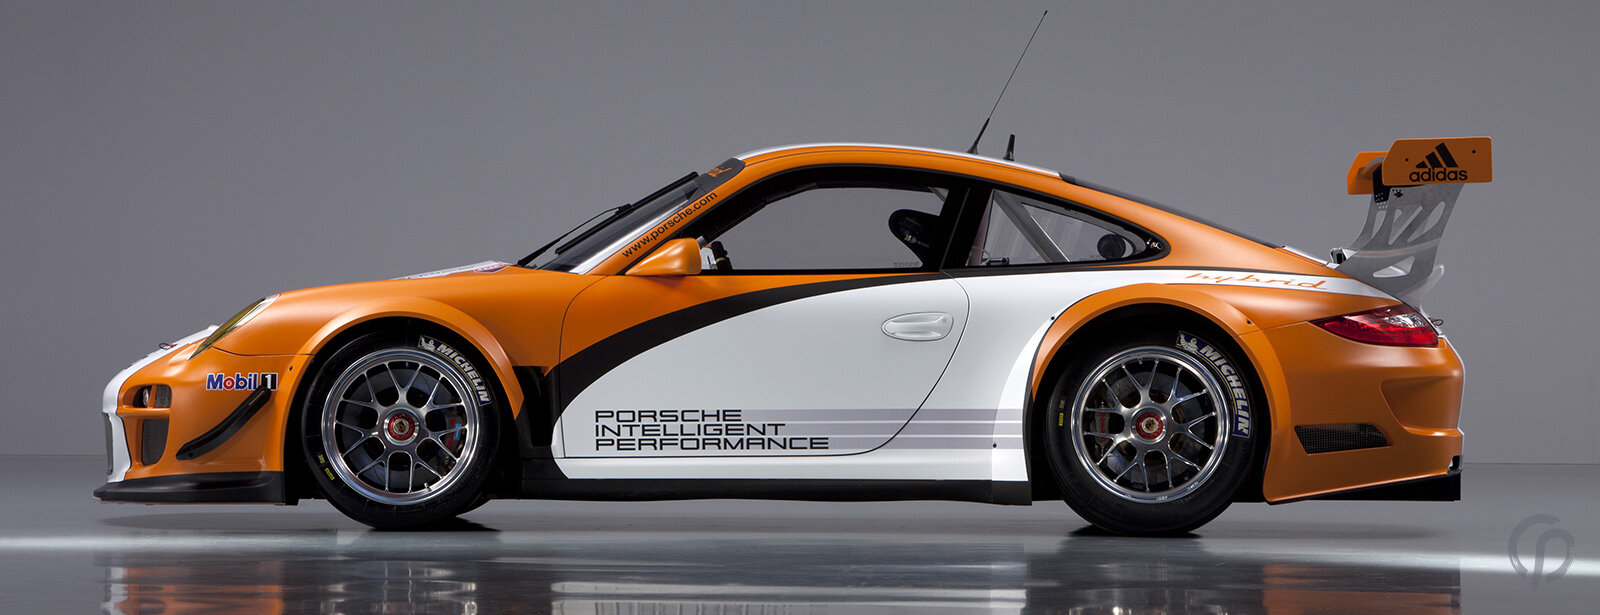 Porsche 911 GT3 R Hybrid Seitenansicht in orange_weiss